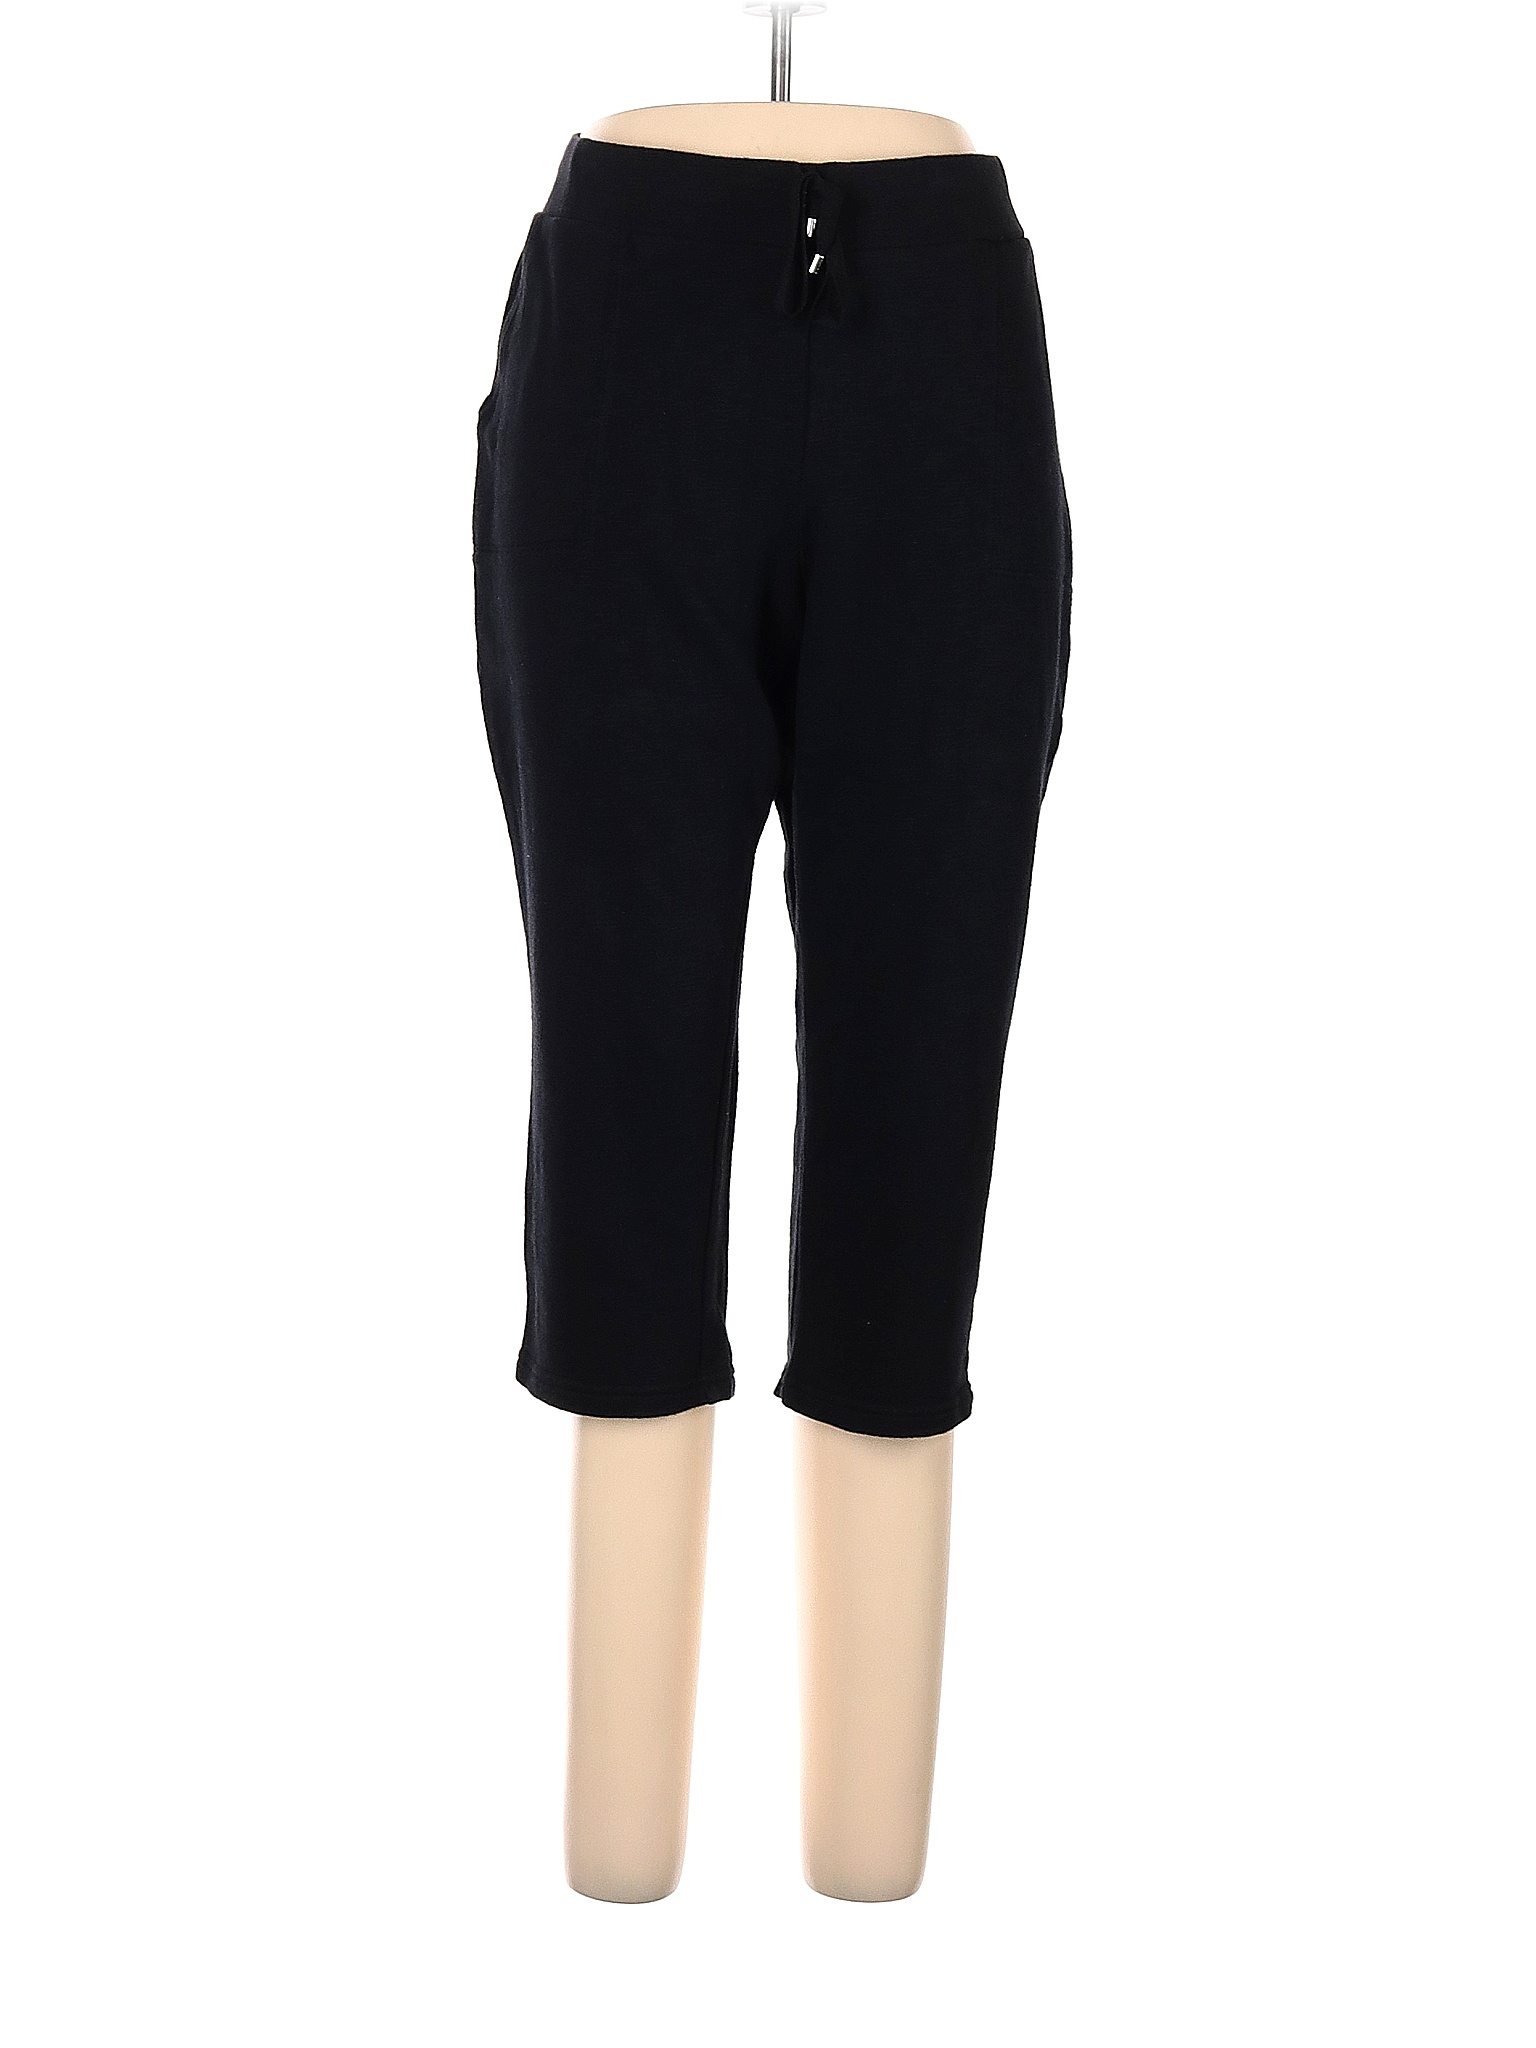 Croft & Barrow Solid Black Sweatpants Size L - 66% off | thredUP